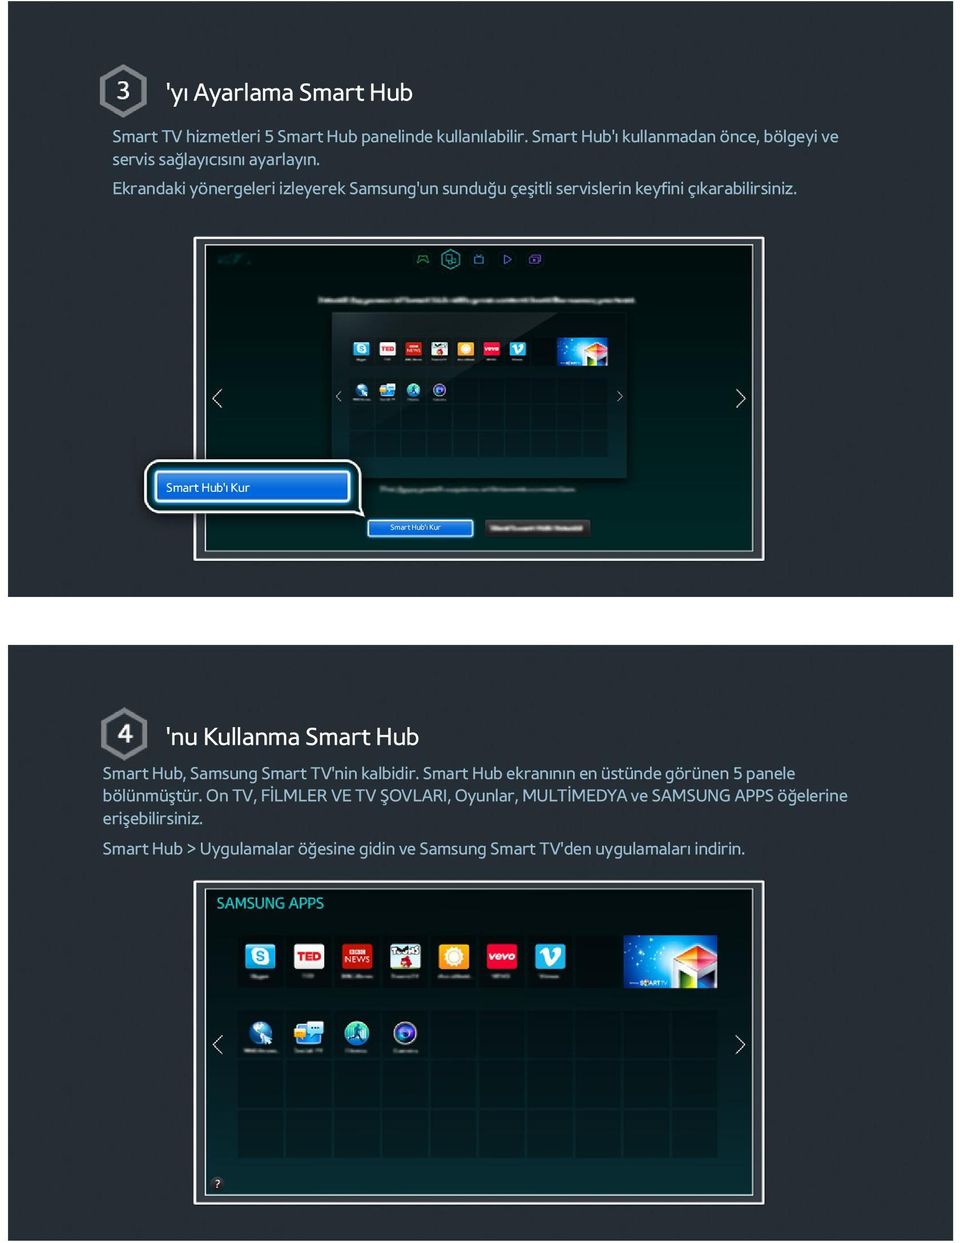 Ekrandaki yönergeleri izleyerek Samsung'un sunduğu çeşitli servislerin keyfini çıkarabilirsiniz.